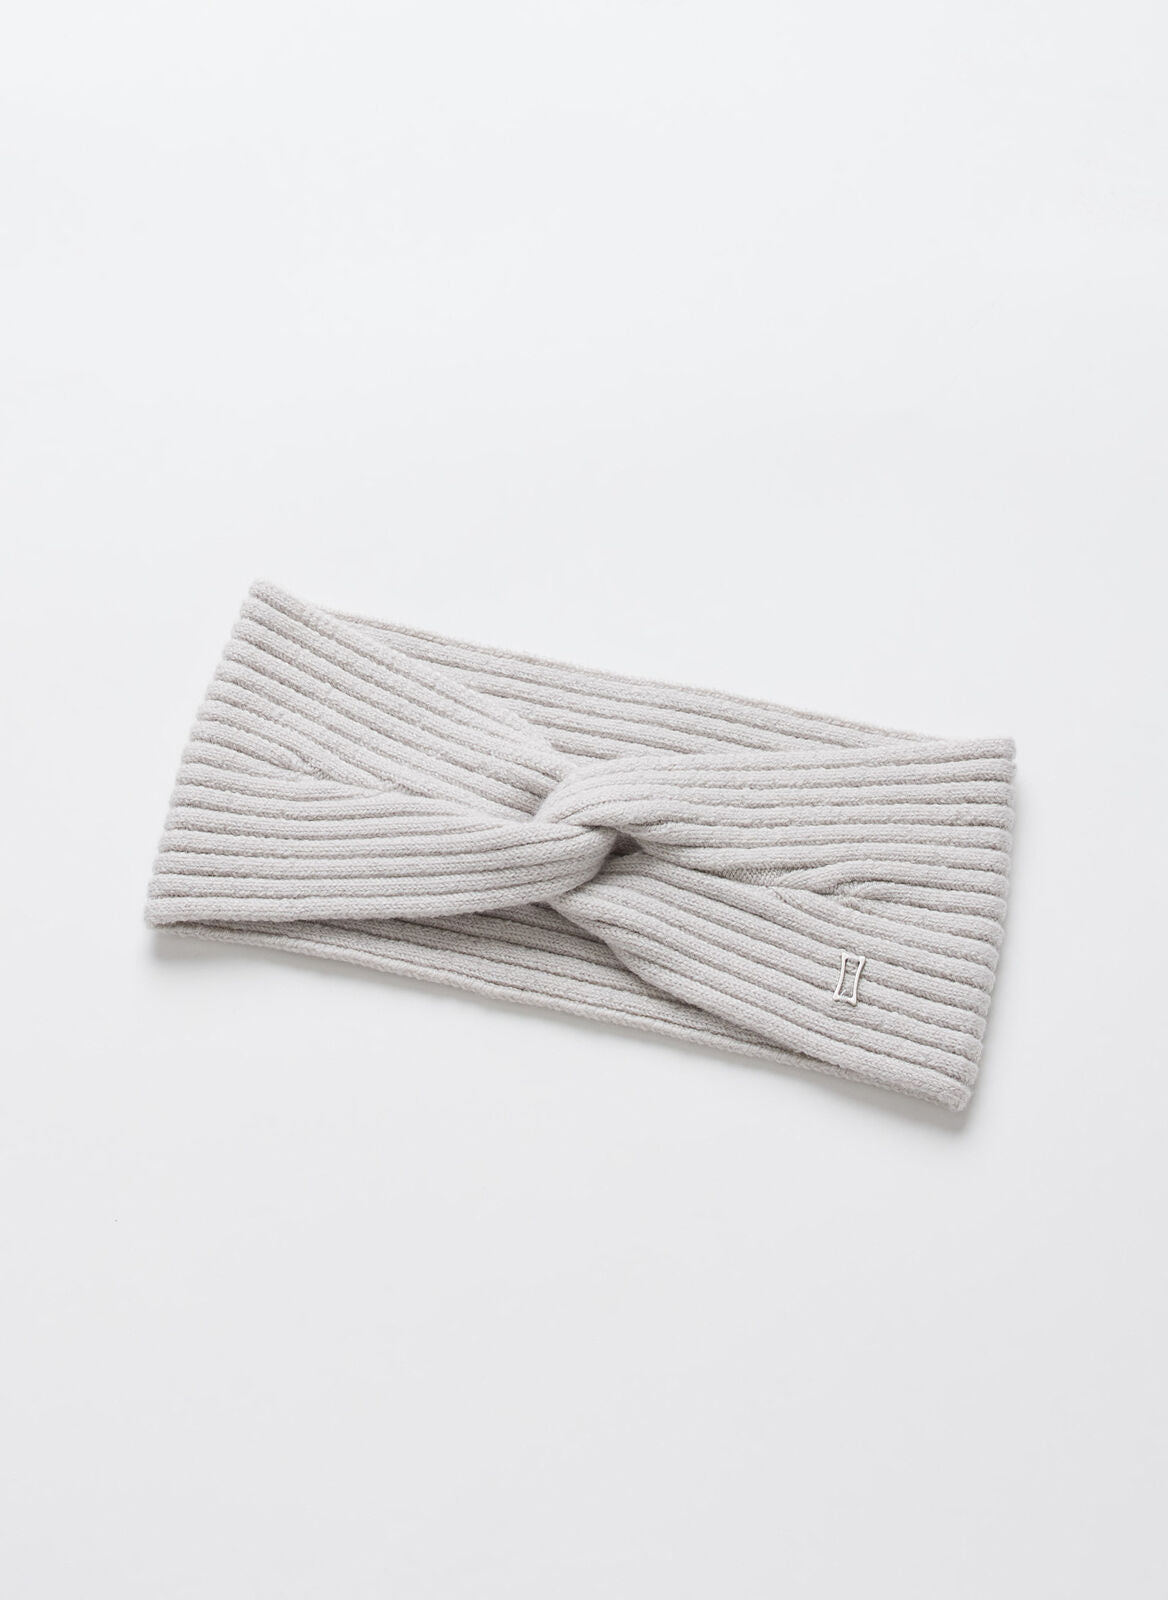 Kit and Ace — Ribbed Merino Headband